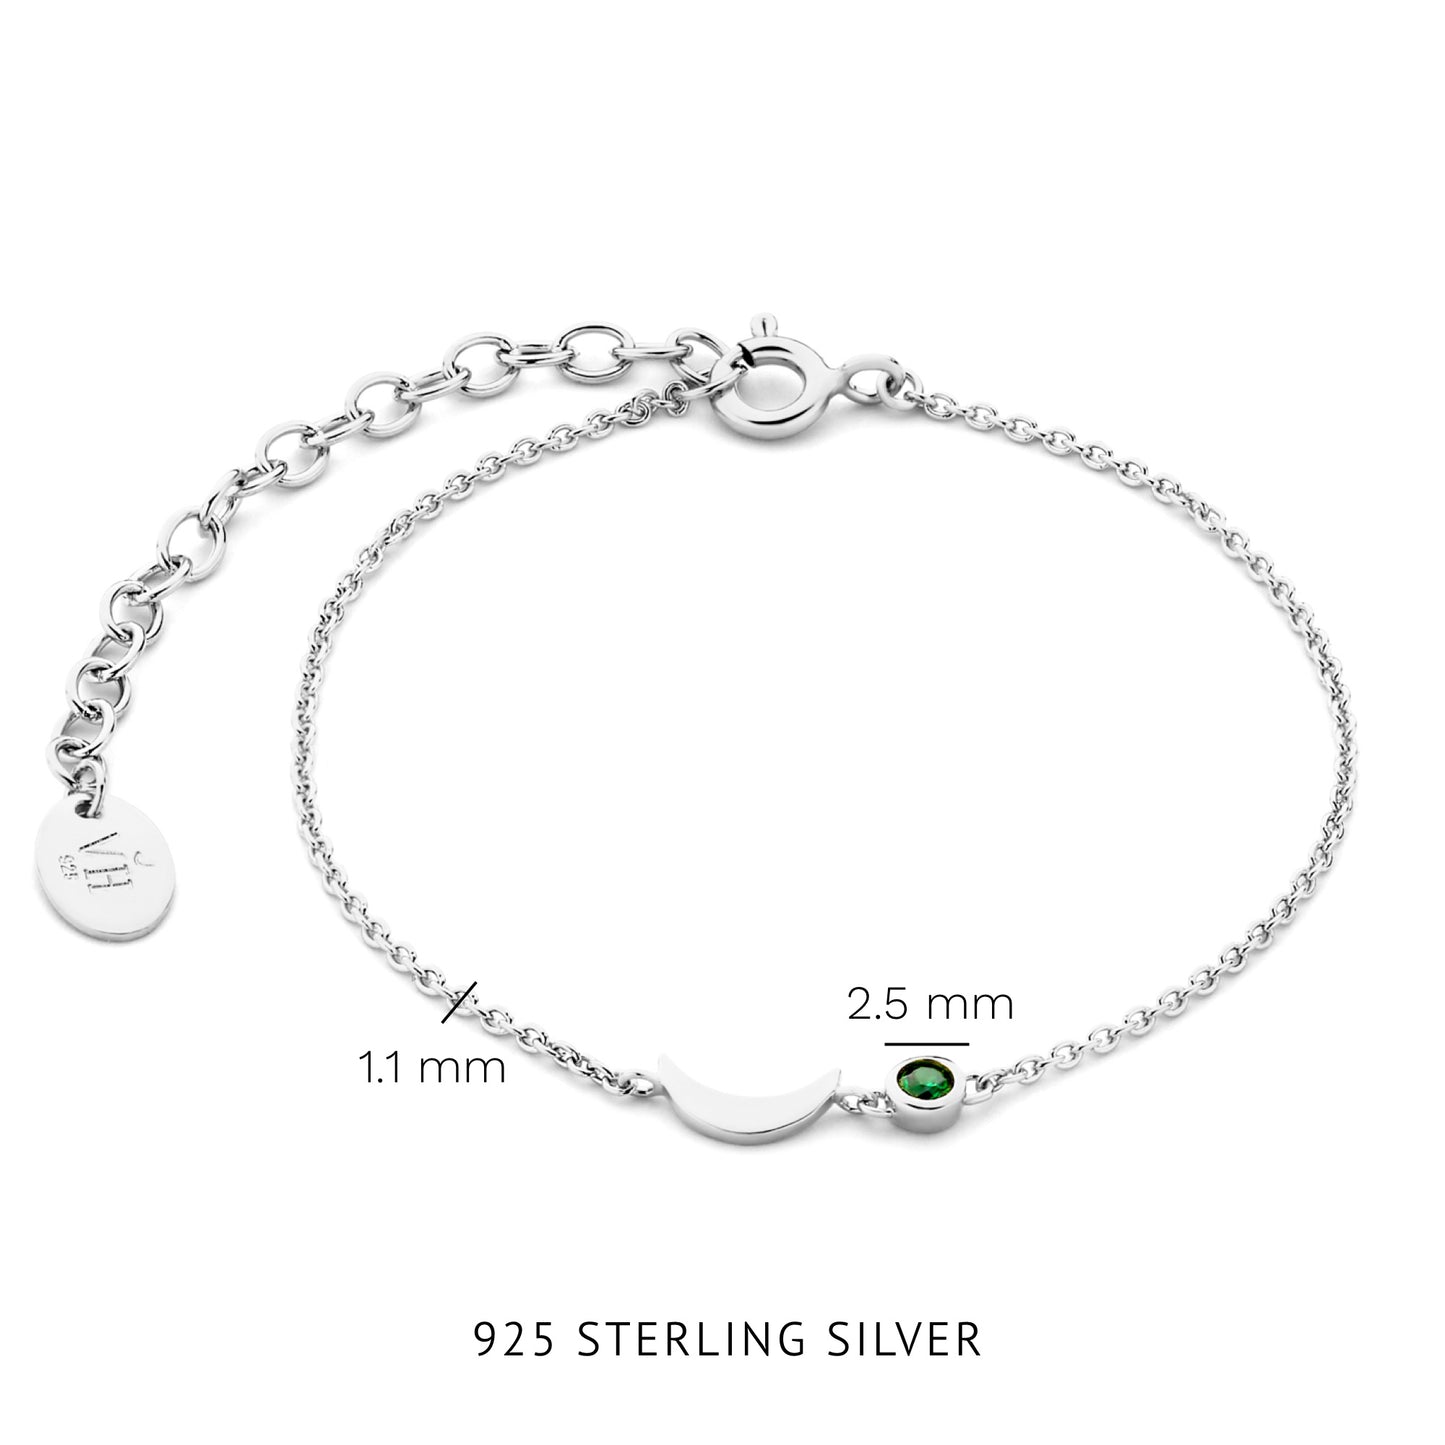 Luna bracelet en argent sterling 925 et oxyde de zirconium vert